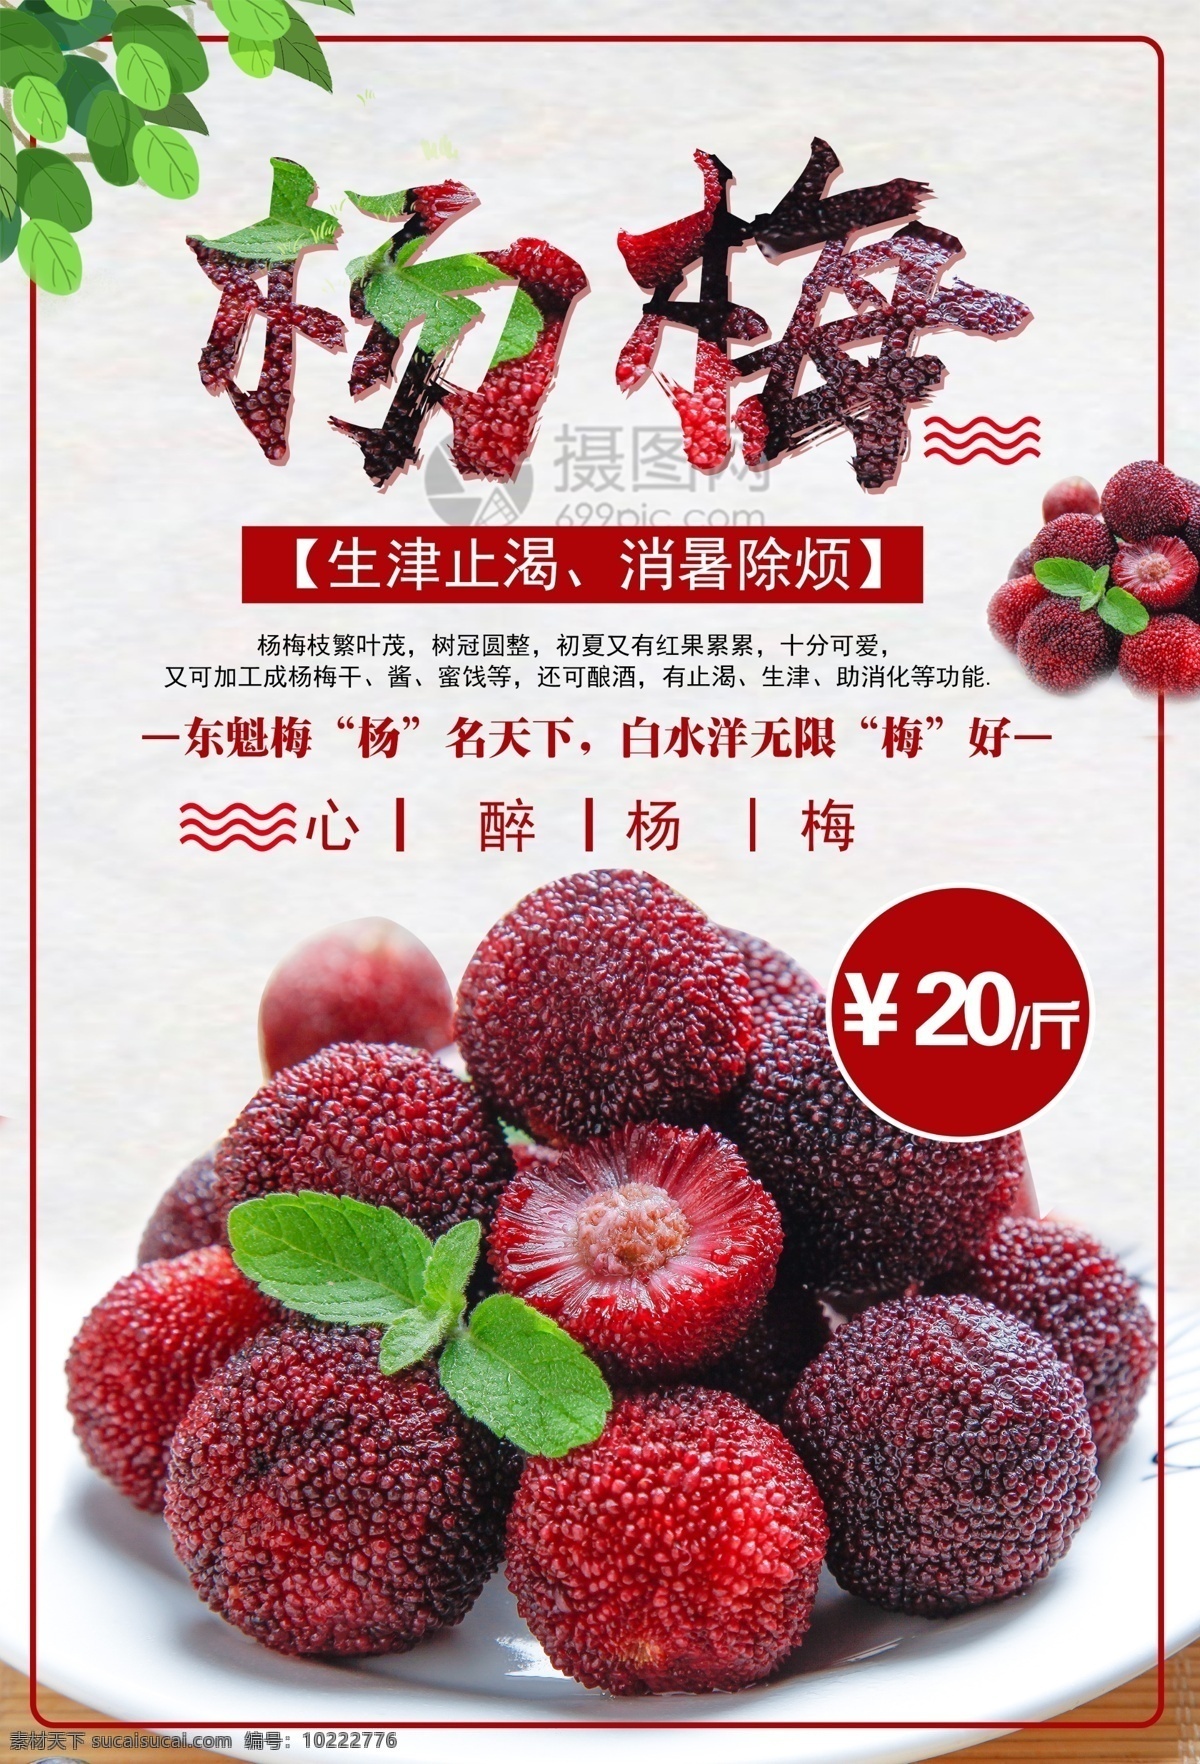 杨梅水果海报 杨梅 水果 美食海报 水果促销 海报